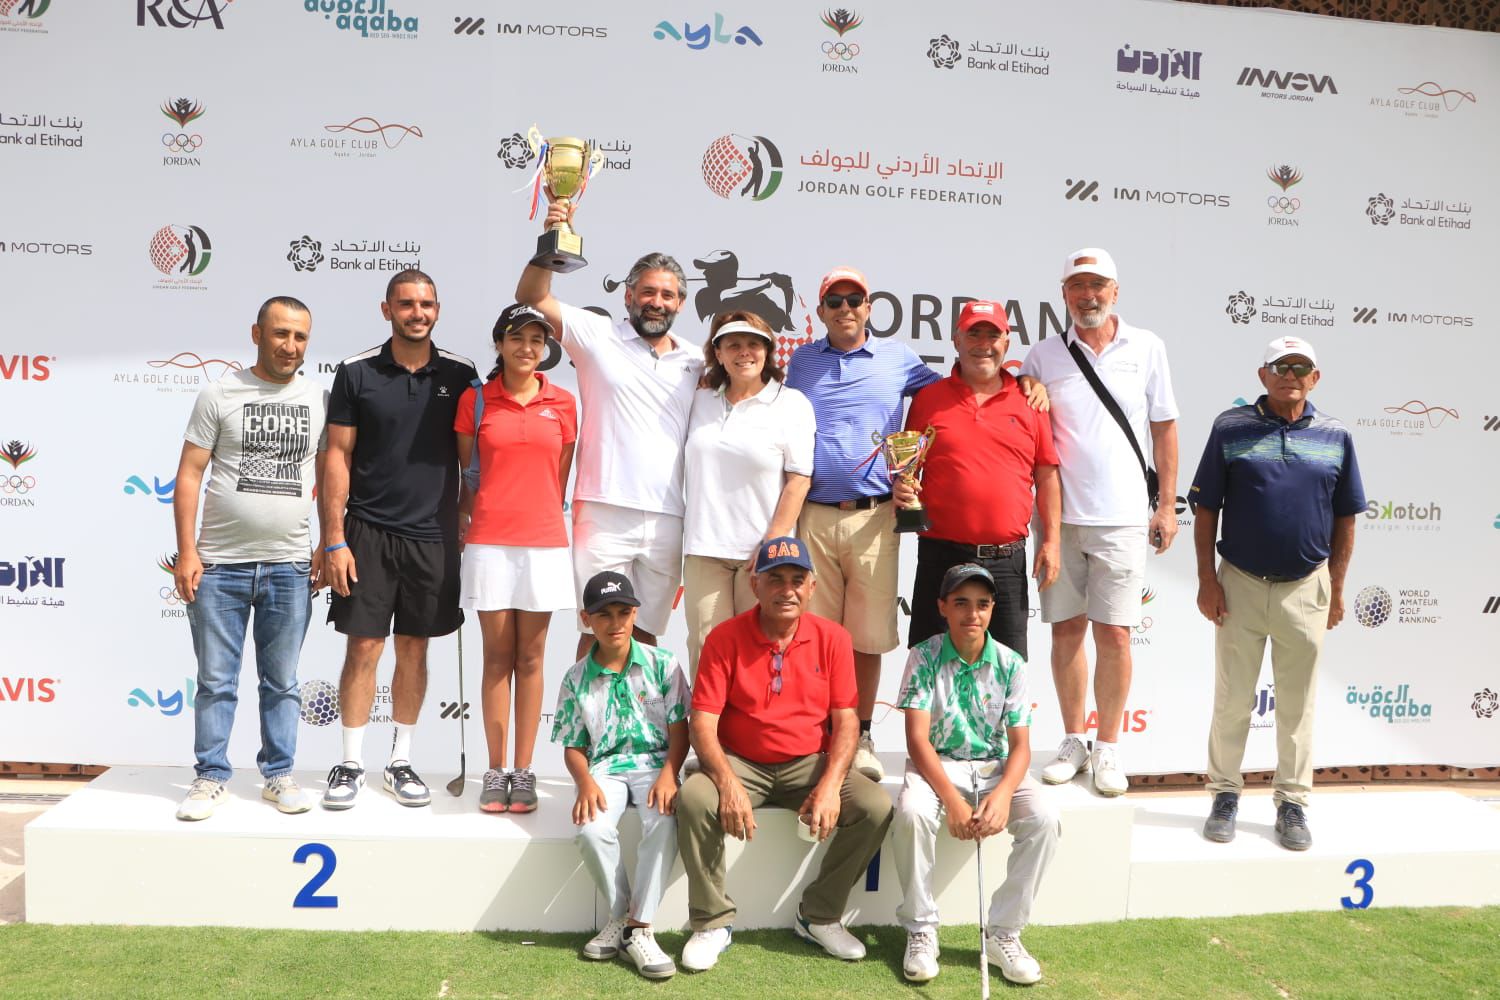 اللاعب التونسي الياس برهومي يظفر بلقب النسخة الثالثة والثلاثين من بطولة الأردن المفتوحة للجولف على ملاعب أيلة